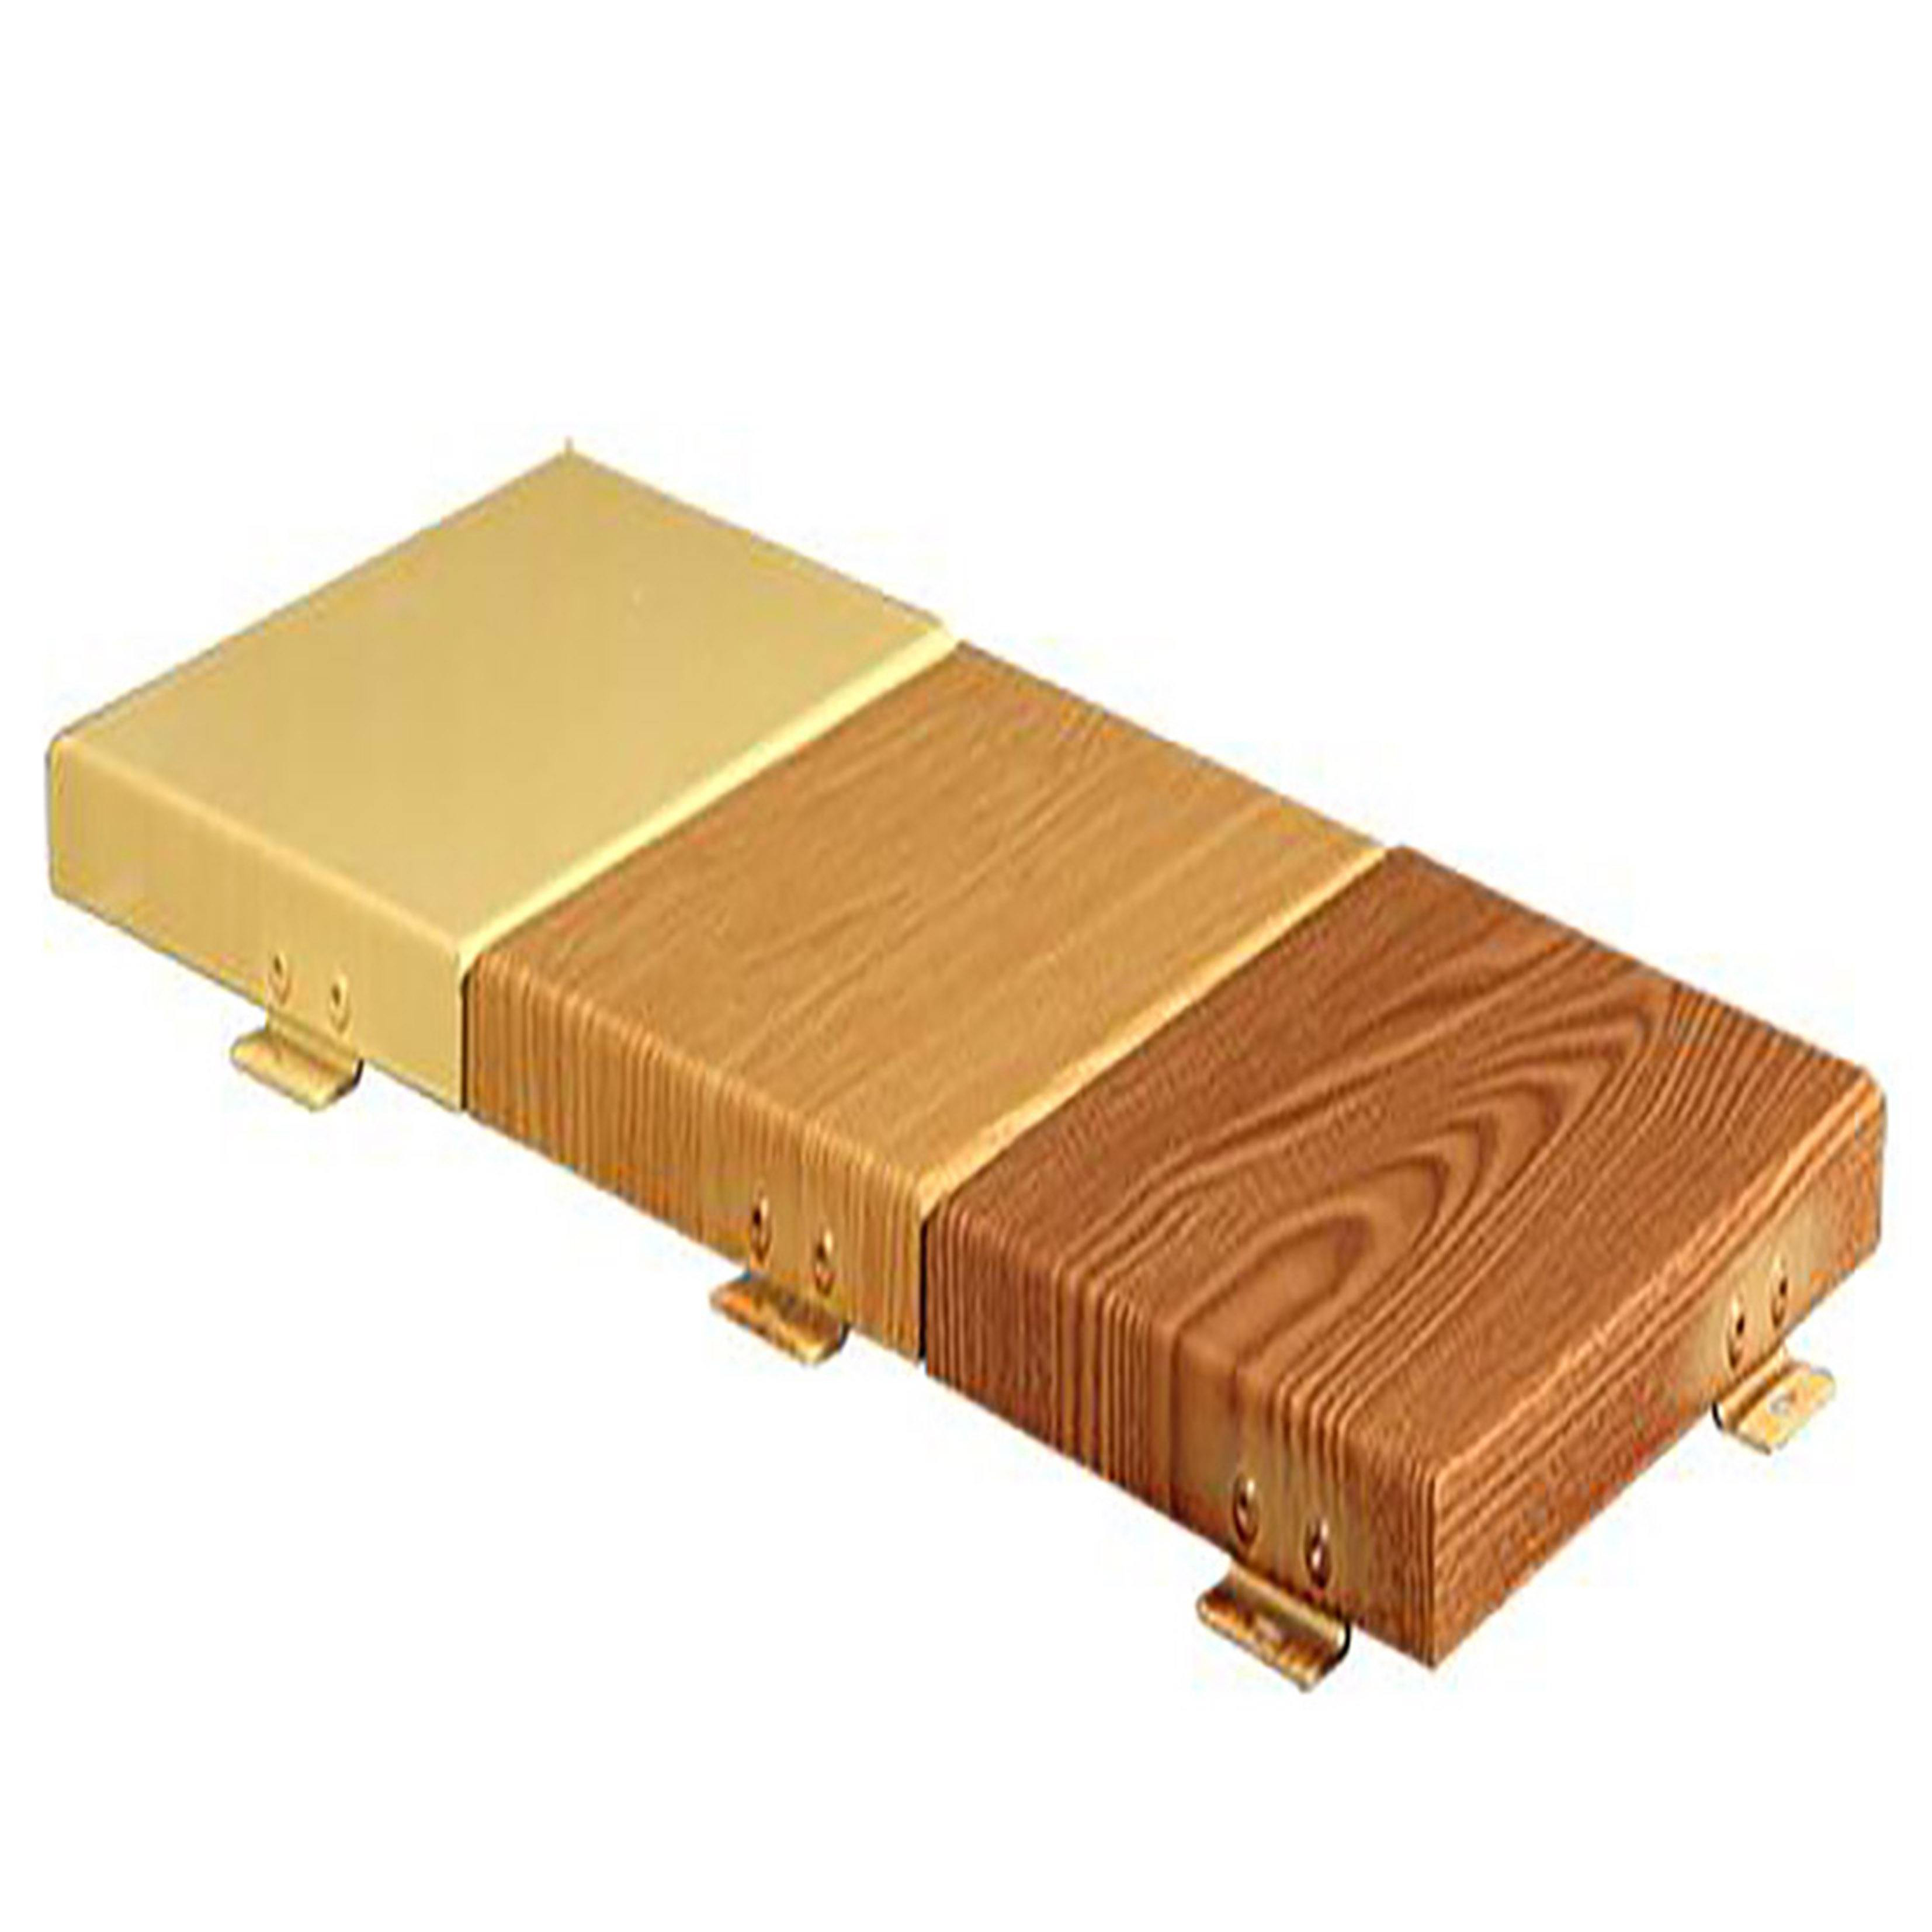 木纹铝单板厂家 木纹铝单板供应商